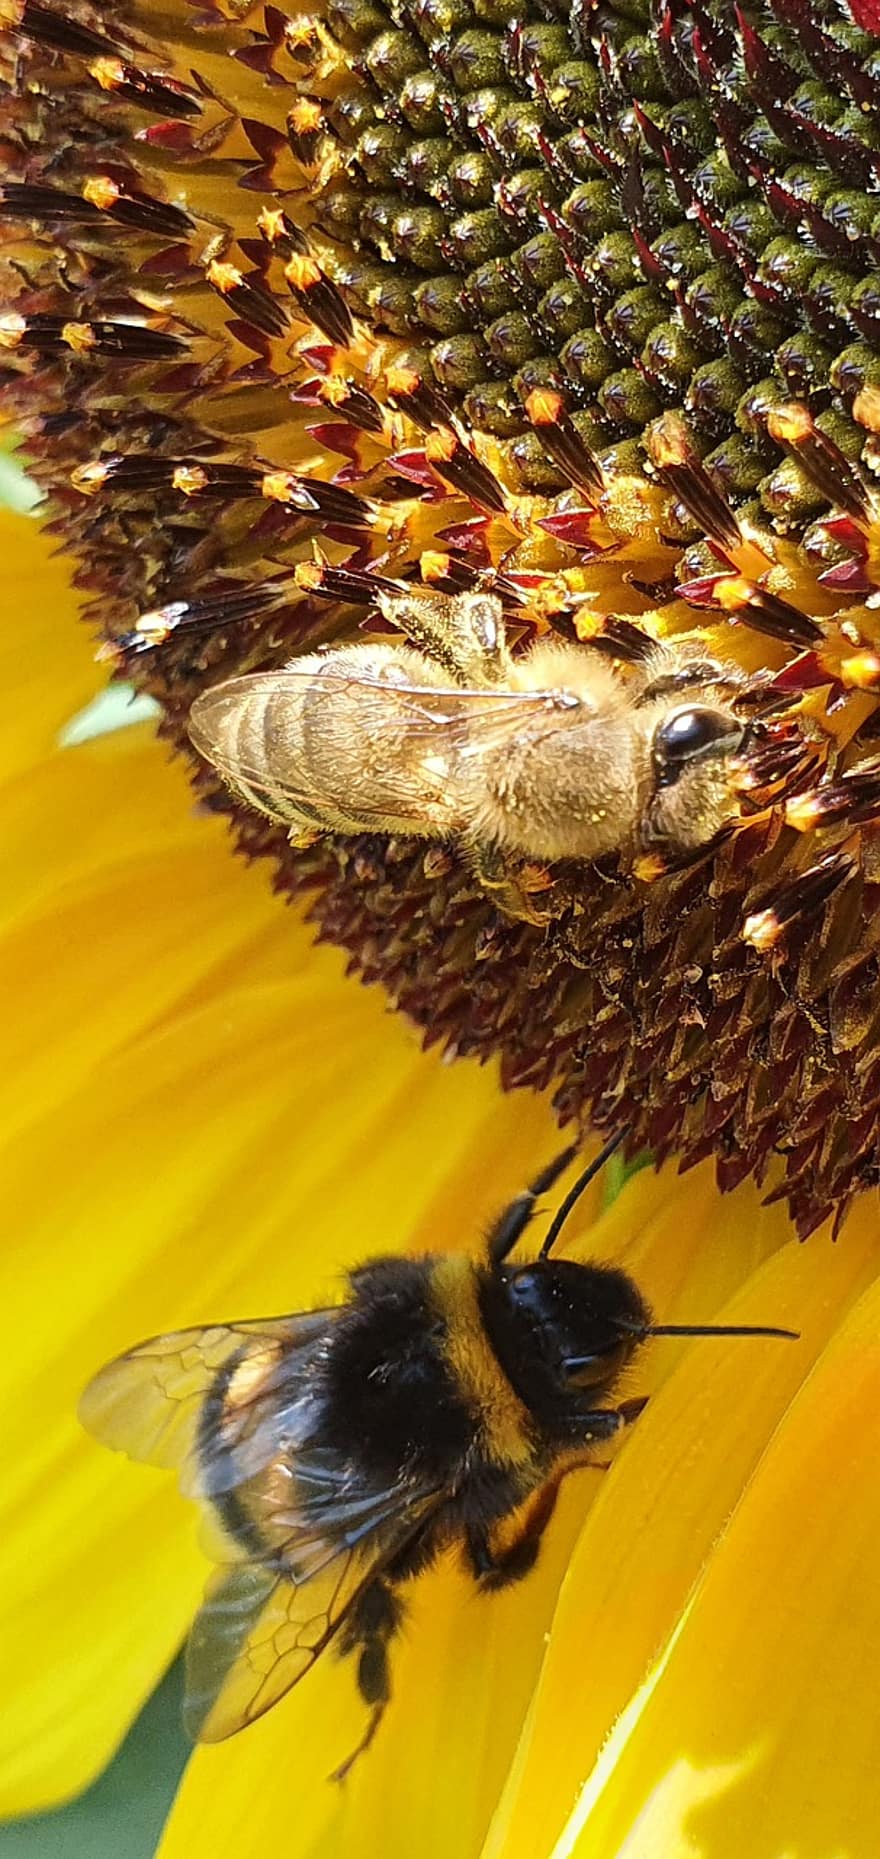 saulėgrąžų, bites, gėlė, kamanė, bombus, medaus BITĖ, apis, vabzdys, geltona